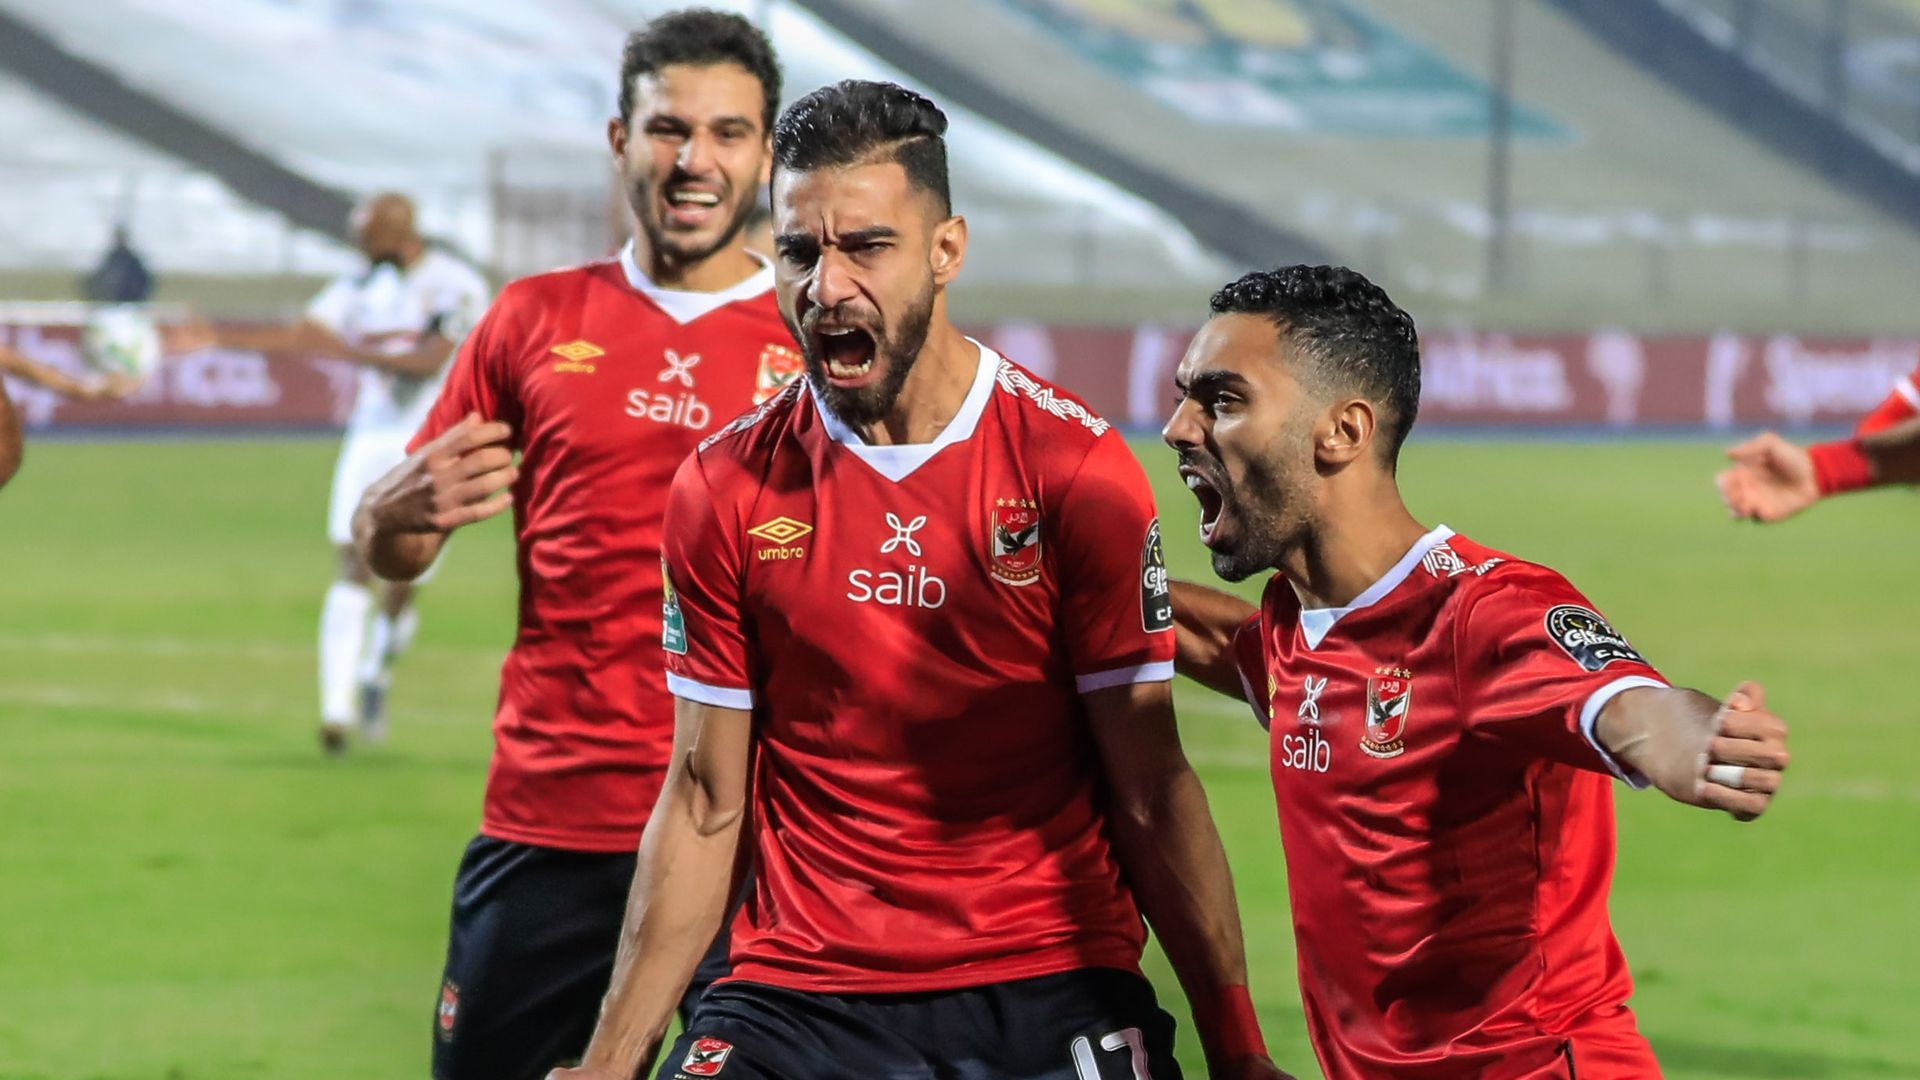 El Sulaya (Al Ahly) : « Nous avons beaucoup pleuré après les défaites, il était temps de pleurer de joie »